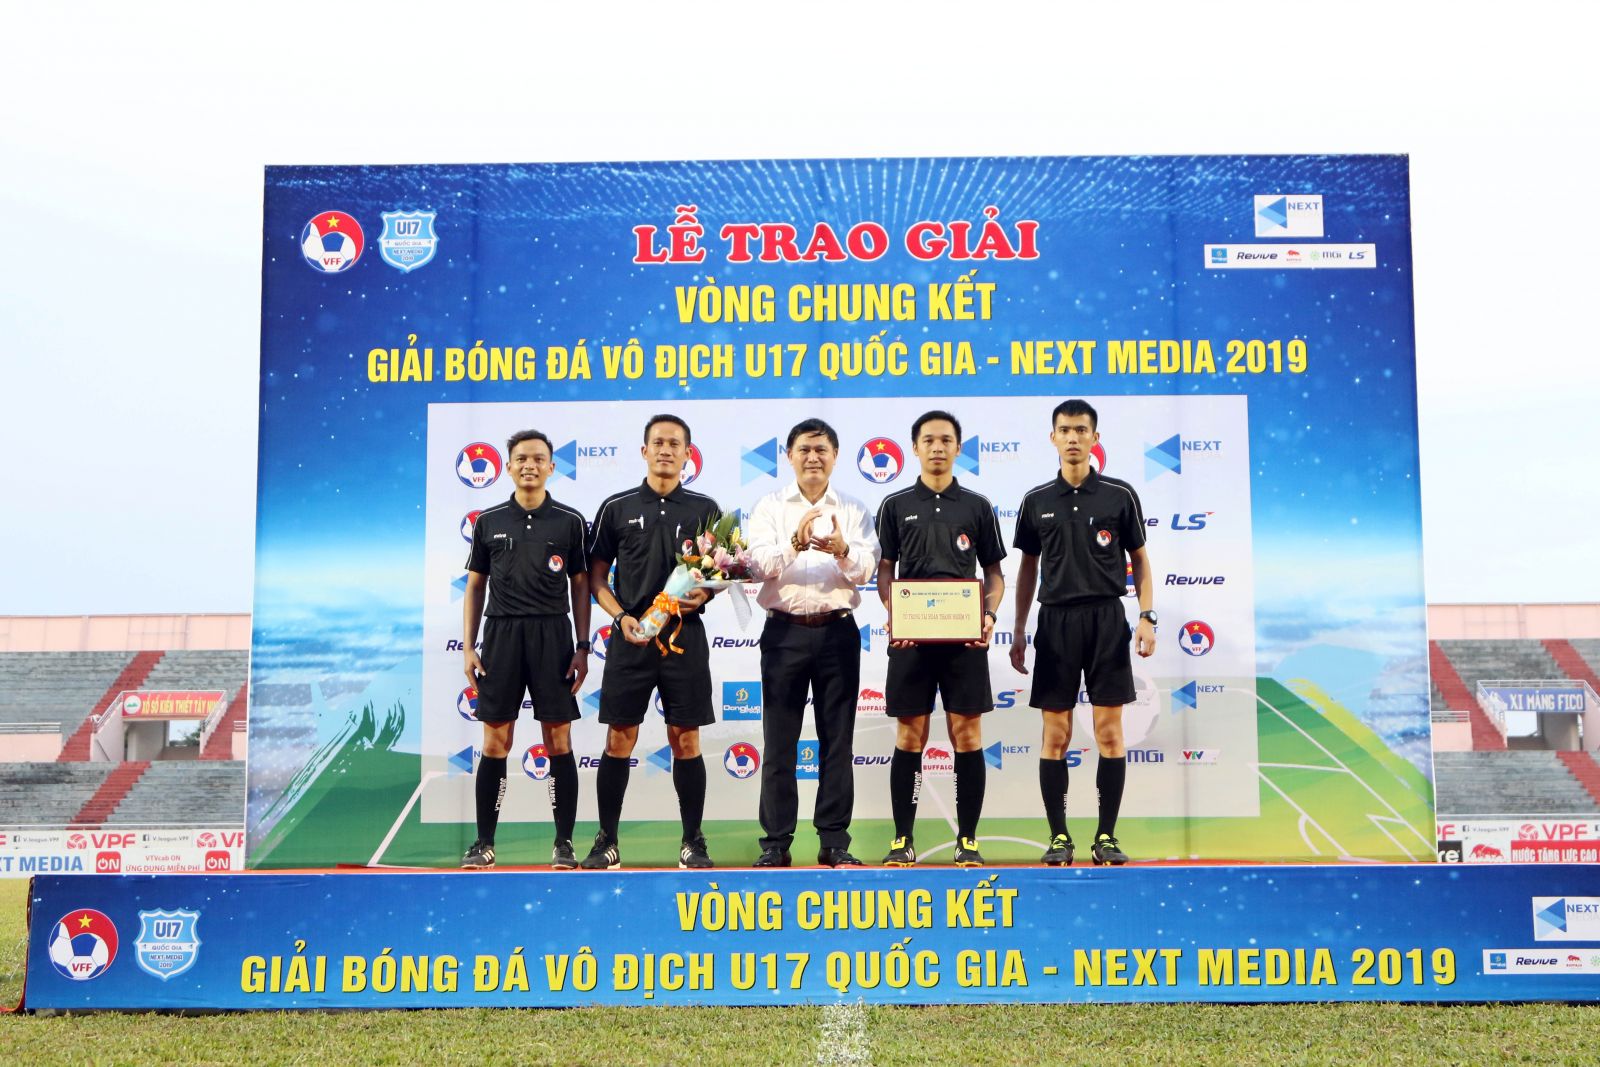 Thắng kịch tính trên chấm 11m, U17 Thanh Hóa đăng quang ngôi vô địch Quốc gia - Ảnh 4.